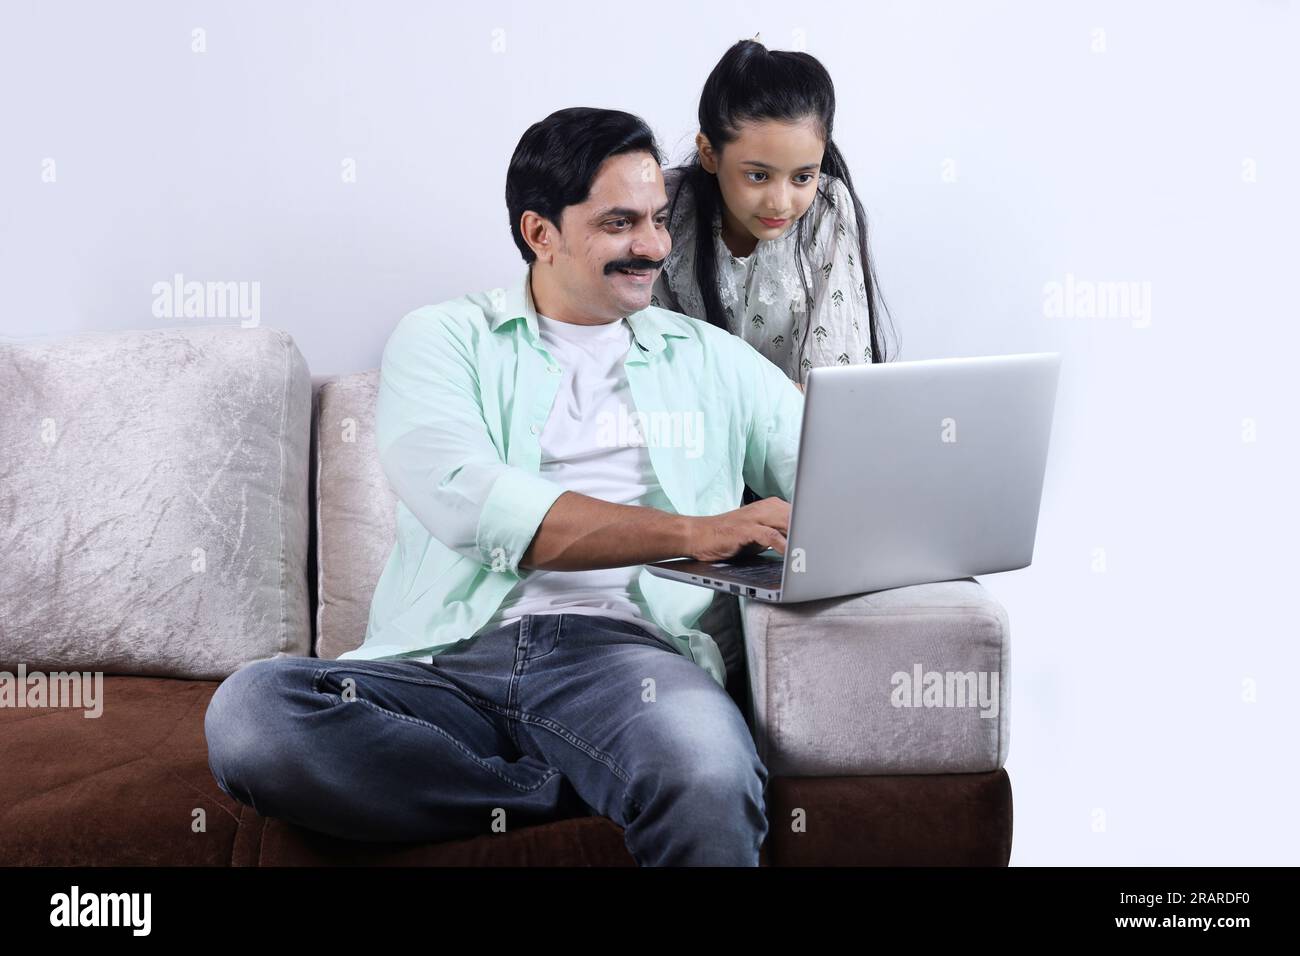 Felice famiglia indiana di padre e figlia single che fa surf con un computer portatile e si diverte piacevolmente insieme. La famiglia sta indagando sul portatile. Foto Stock